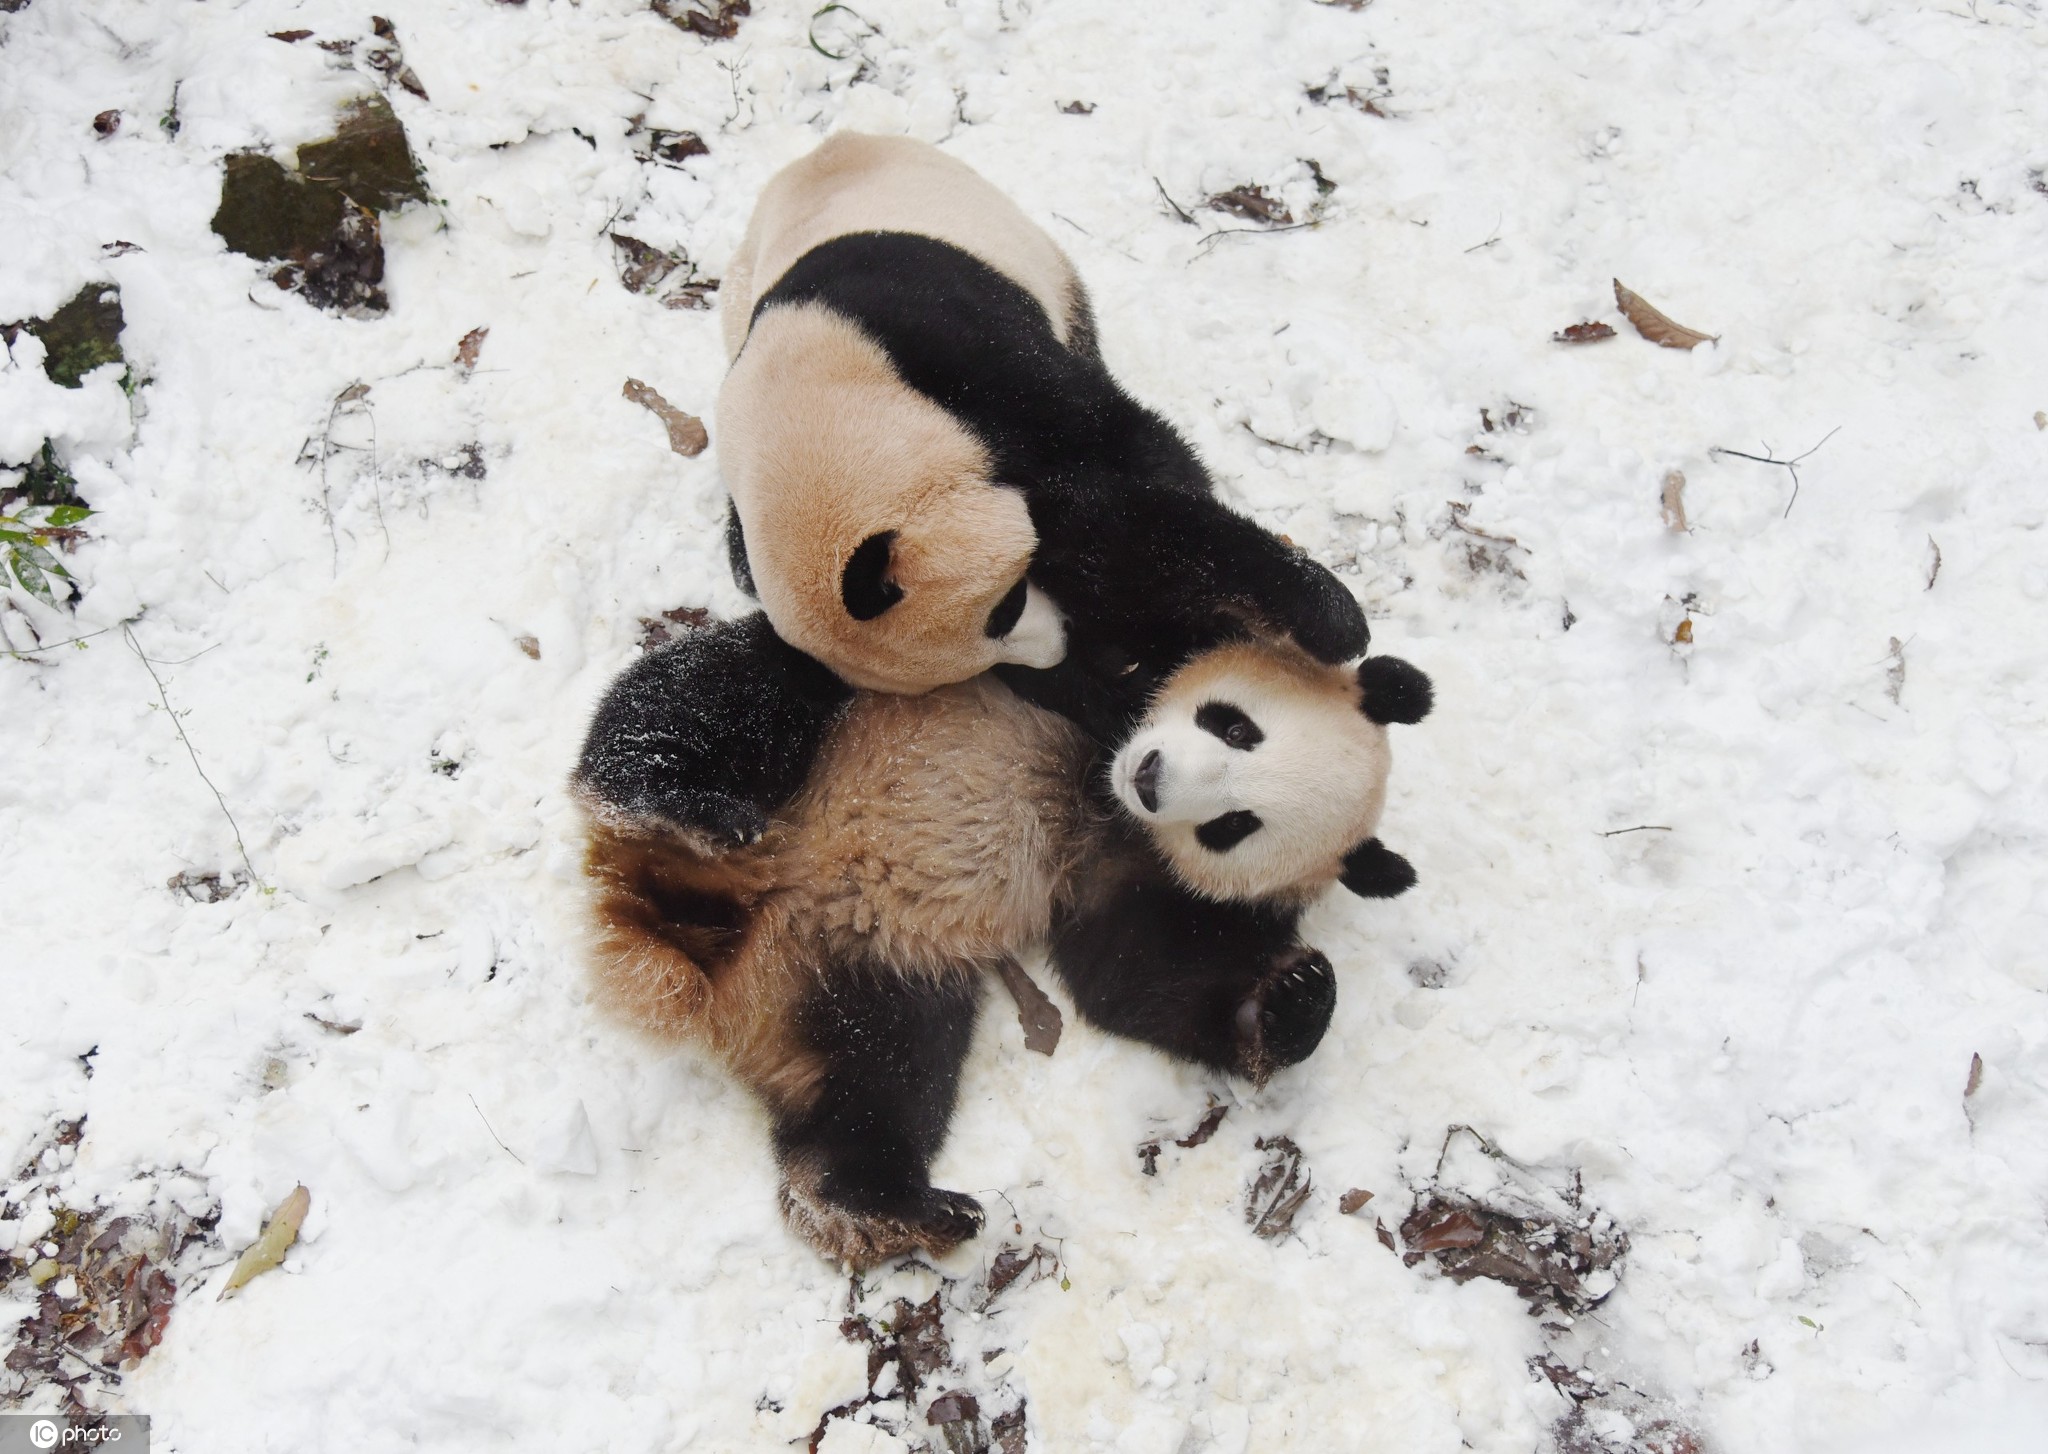 大雪节气至 晒晒敲可爱的熊猫雪地撒欢照